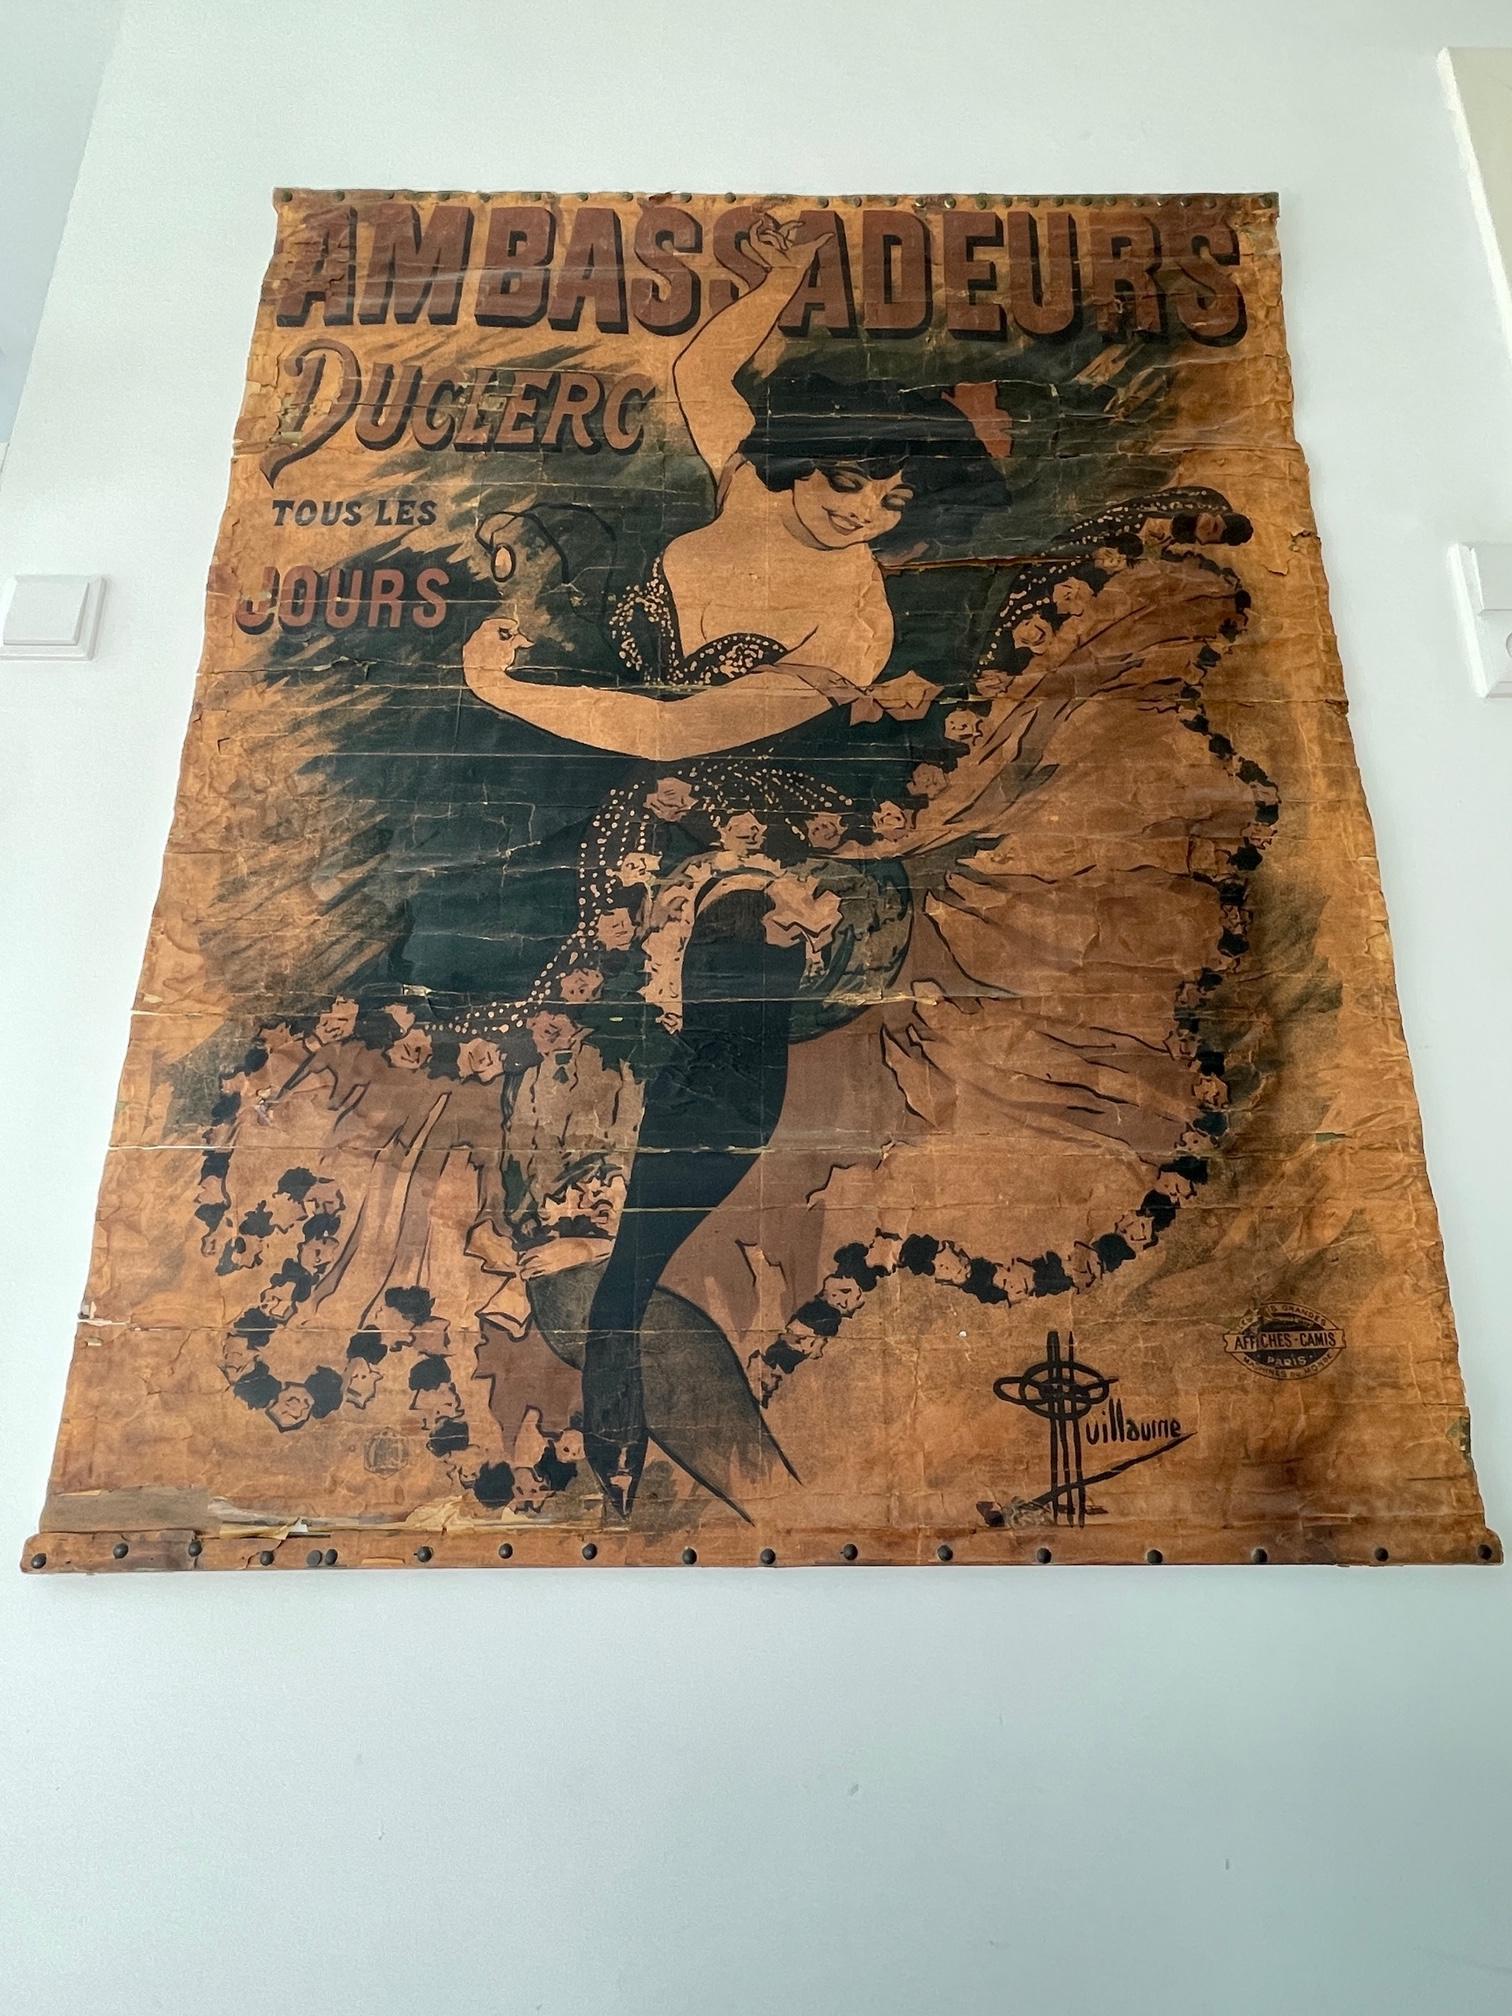 Fin du XIXe siècle 1894 Antique affiche / poster Ambassadeurs Duclerc tous les jours - Guillaume en vente